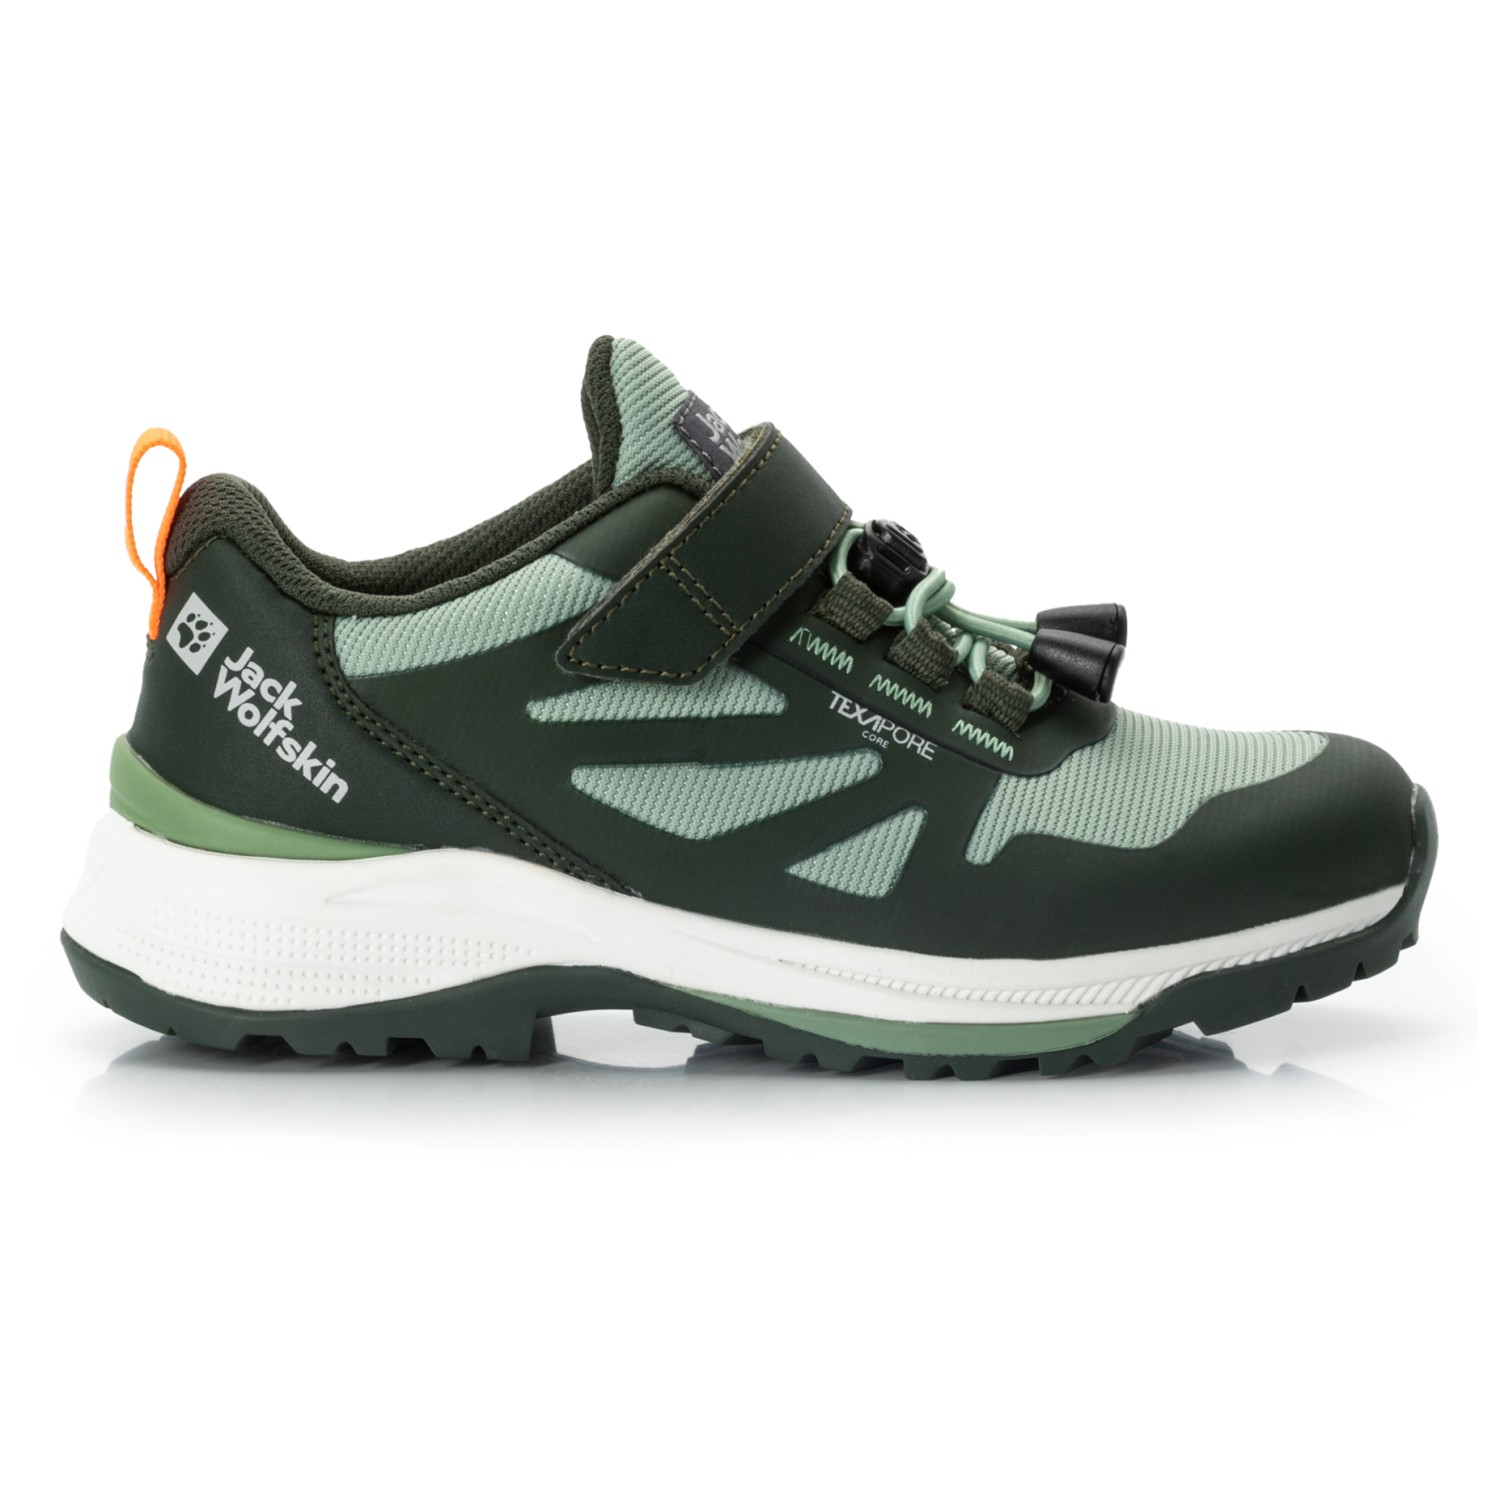 Мультиспортивная обувь Jack Wolfskin Kid's Vili Hiker Texapore Low, цвет Mint Leaf цена и фото